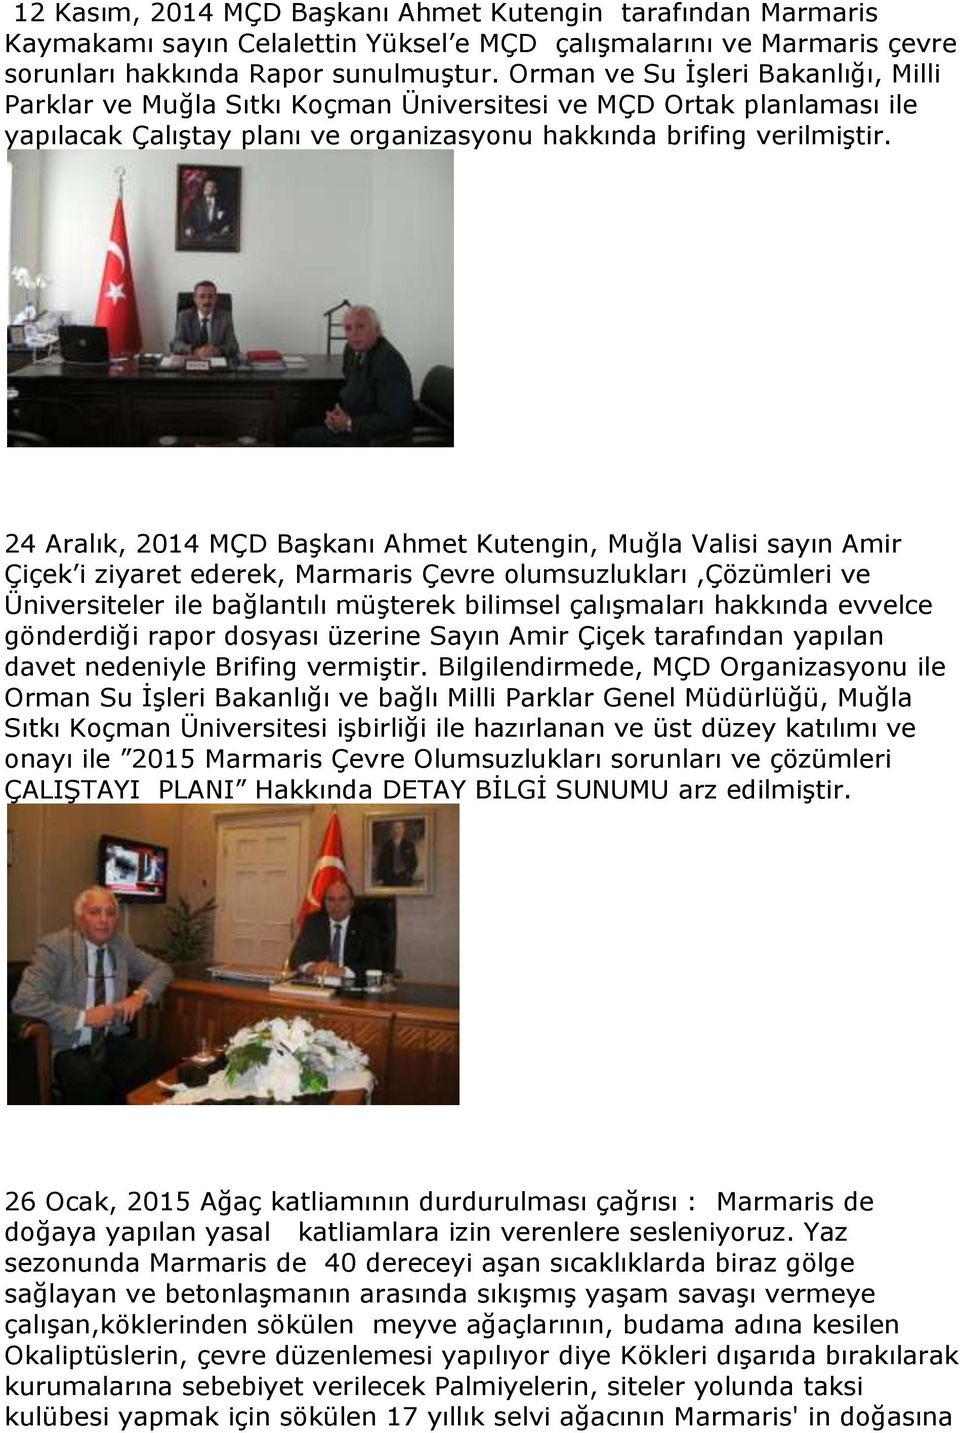 24 Aralık, 2014 MÇD Başkanı Ahmet Kutengin, Muğla Valisi sayın Amir Çiçek i ziyaret ederek, Marmaris Çevre olumsuzlukları,çözümleri ve Üniversiteler ile bağlantılı müşterek bilimsel çalışmaları